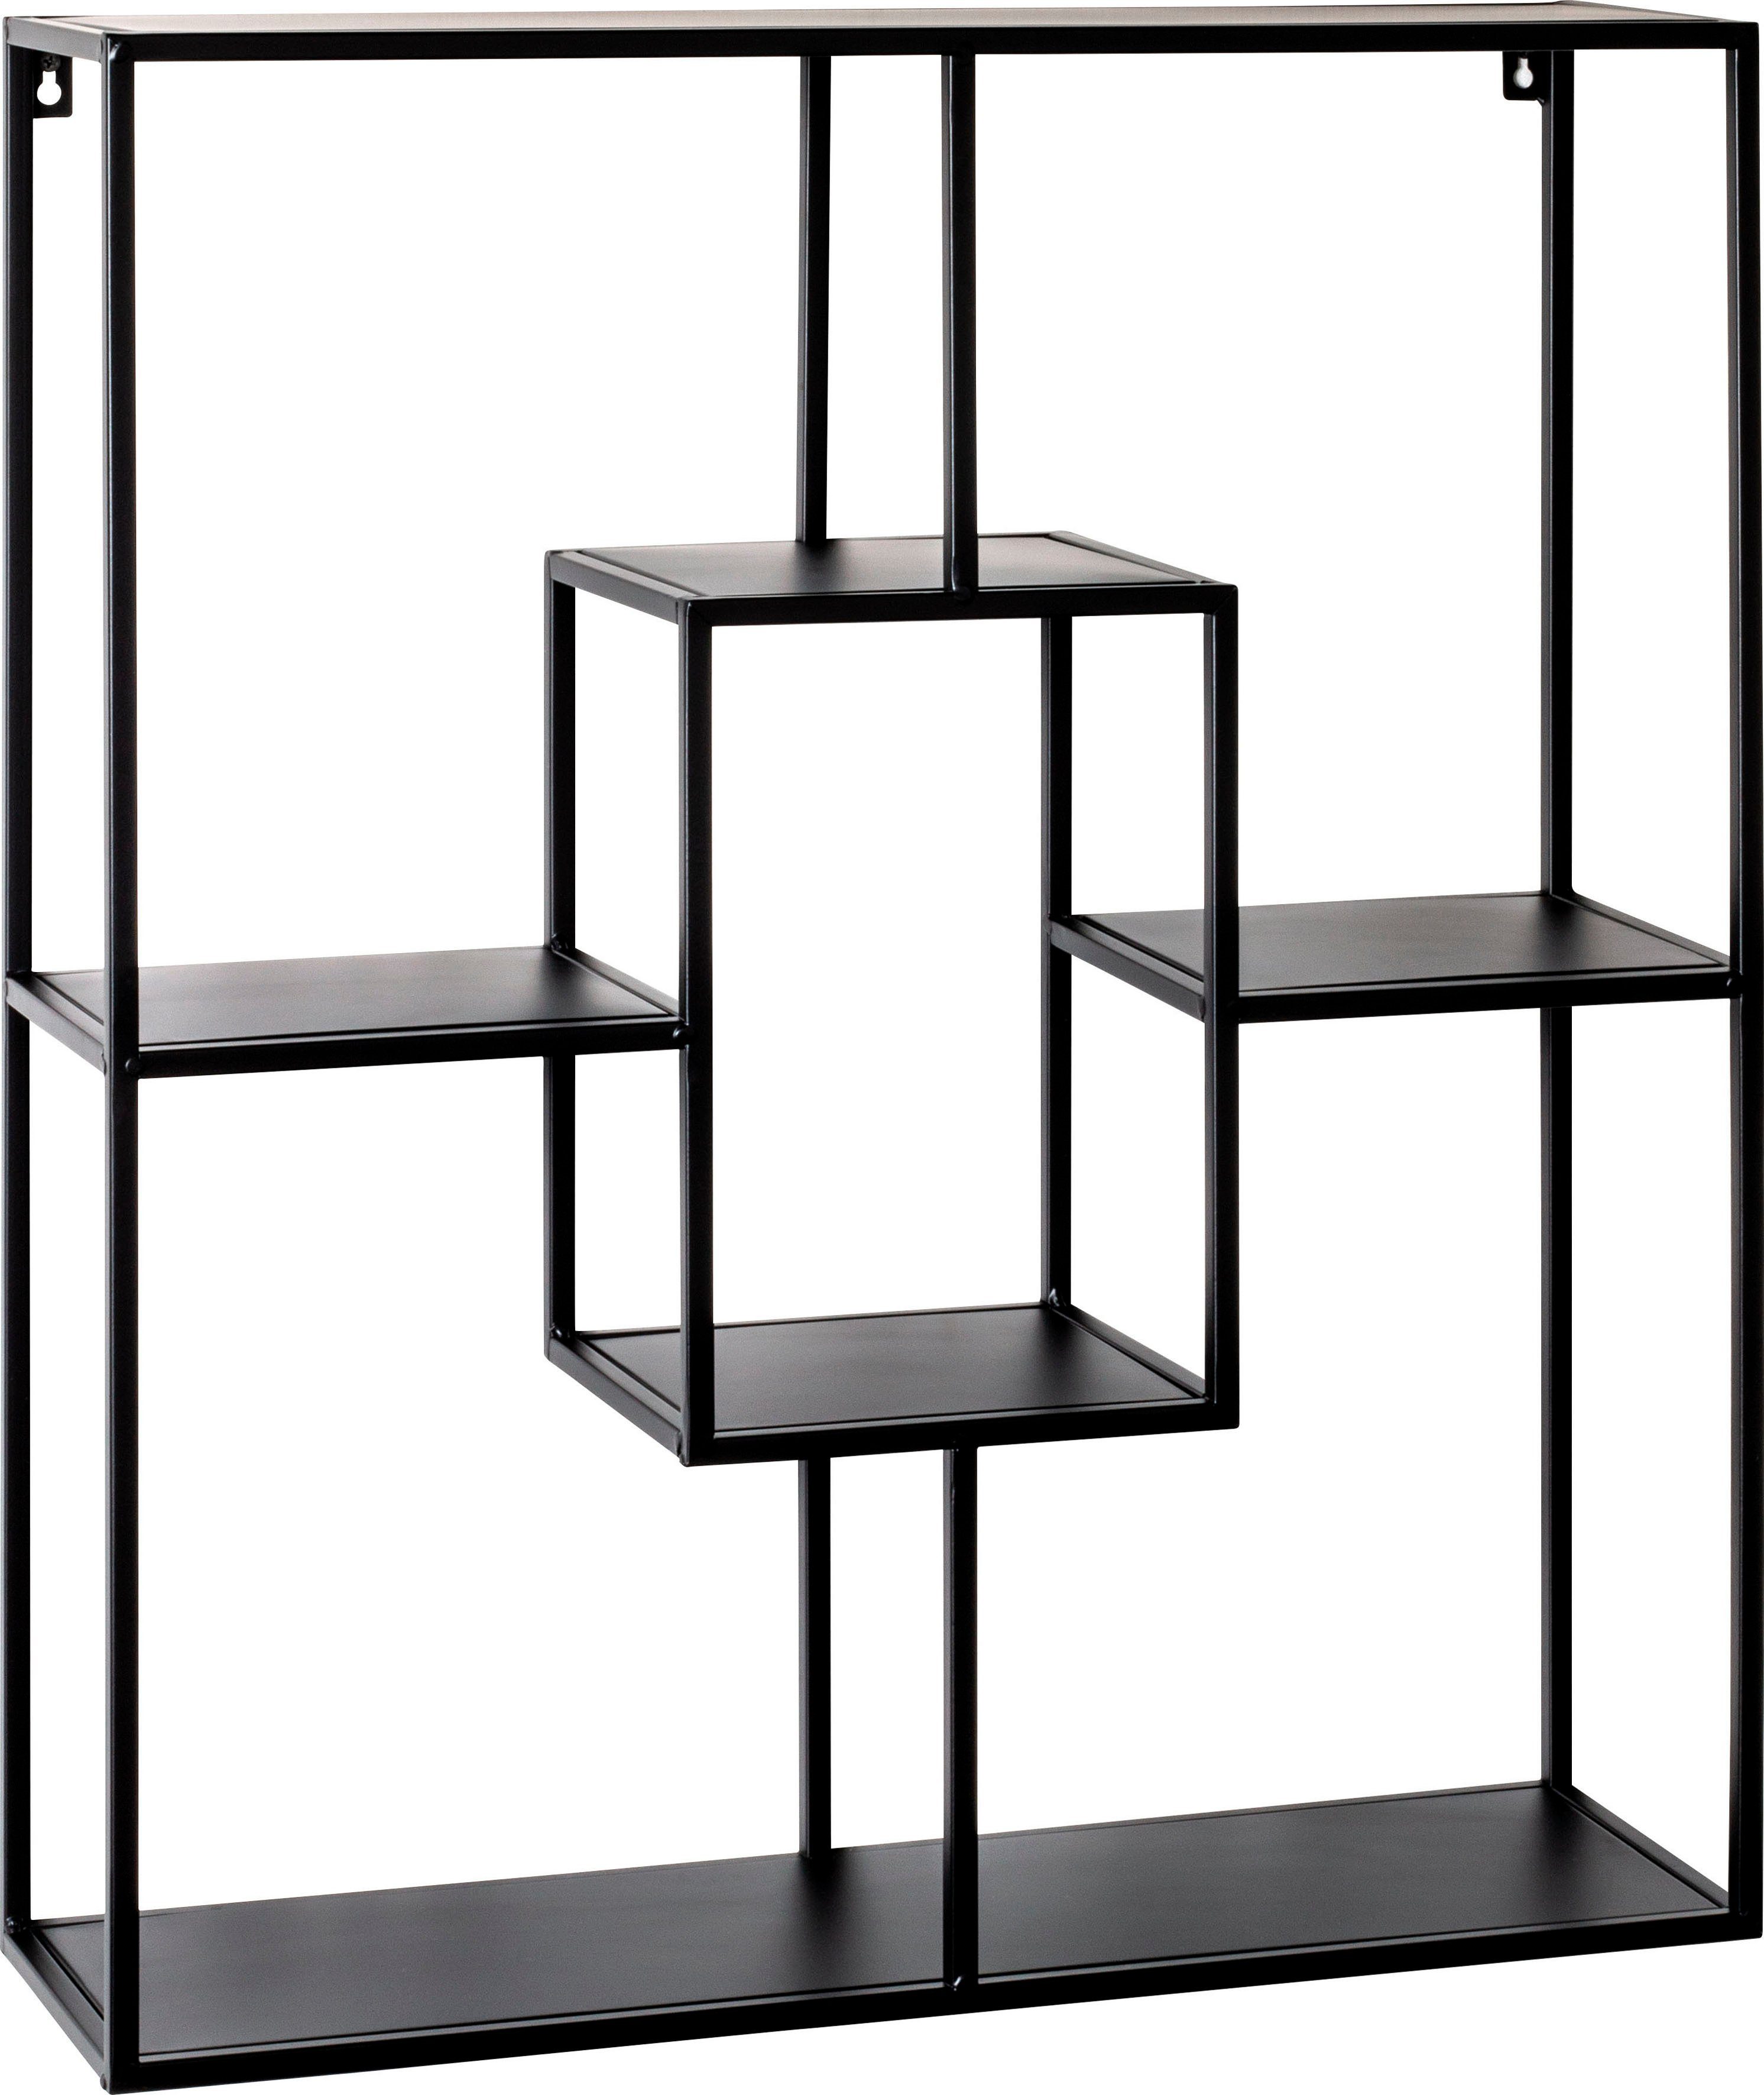 HAKU Wandregal Wandregal, HAKU Möbel Wandregal (BHT 60x70x18 cm) BHT  60x70x18 cm schwarz, Ablagen aus Metall in schwarz lackiert